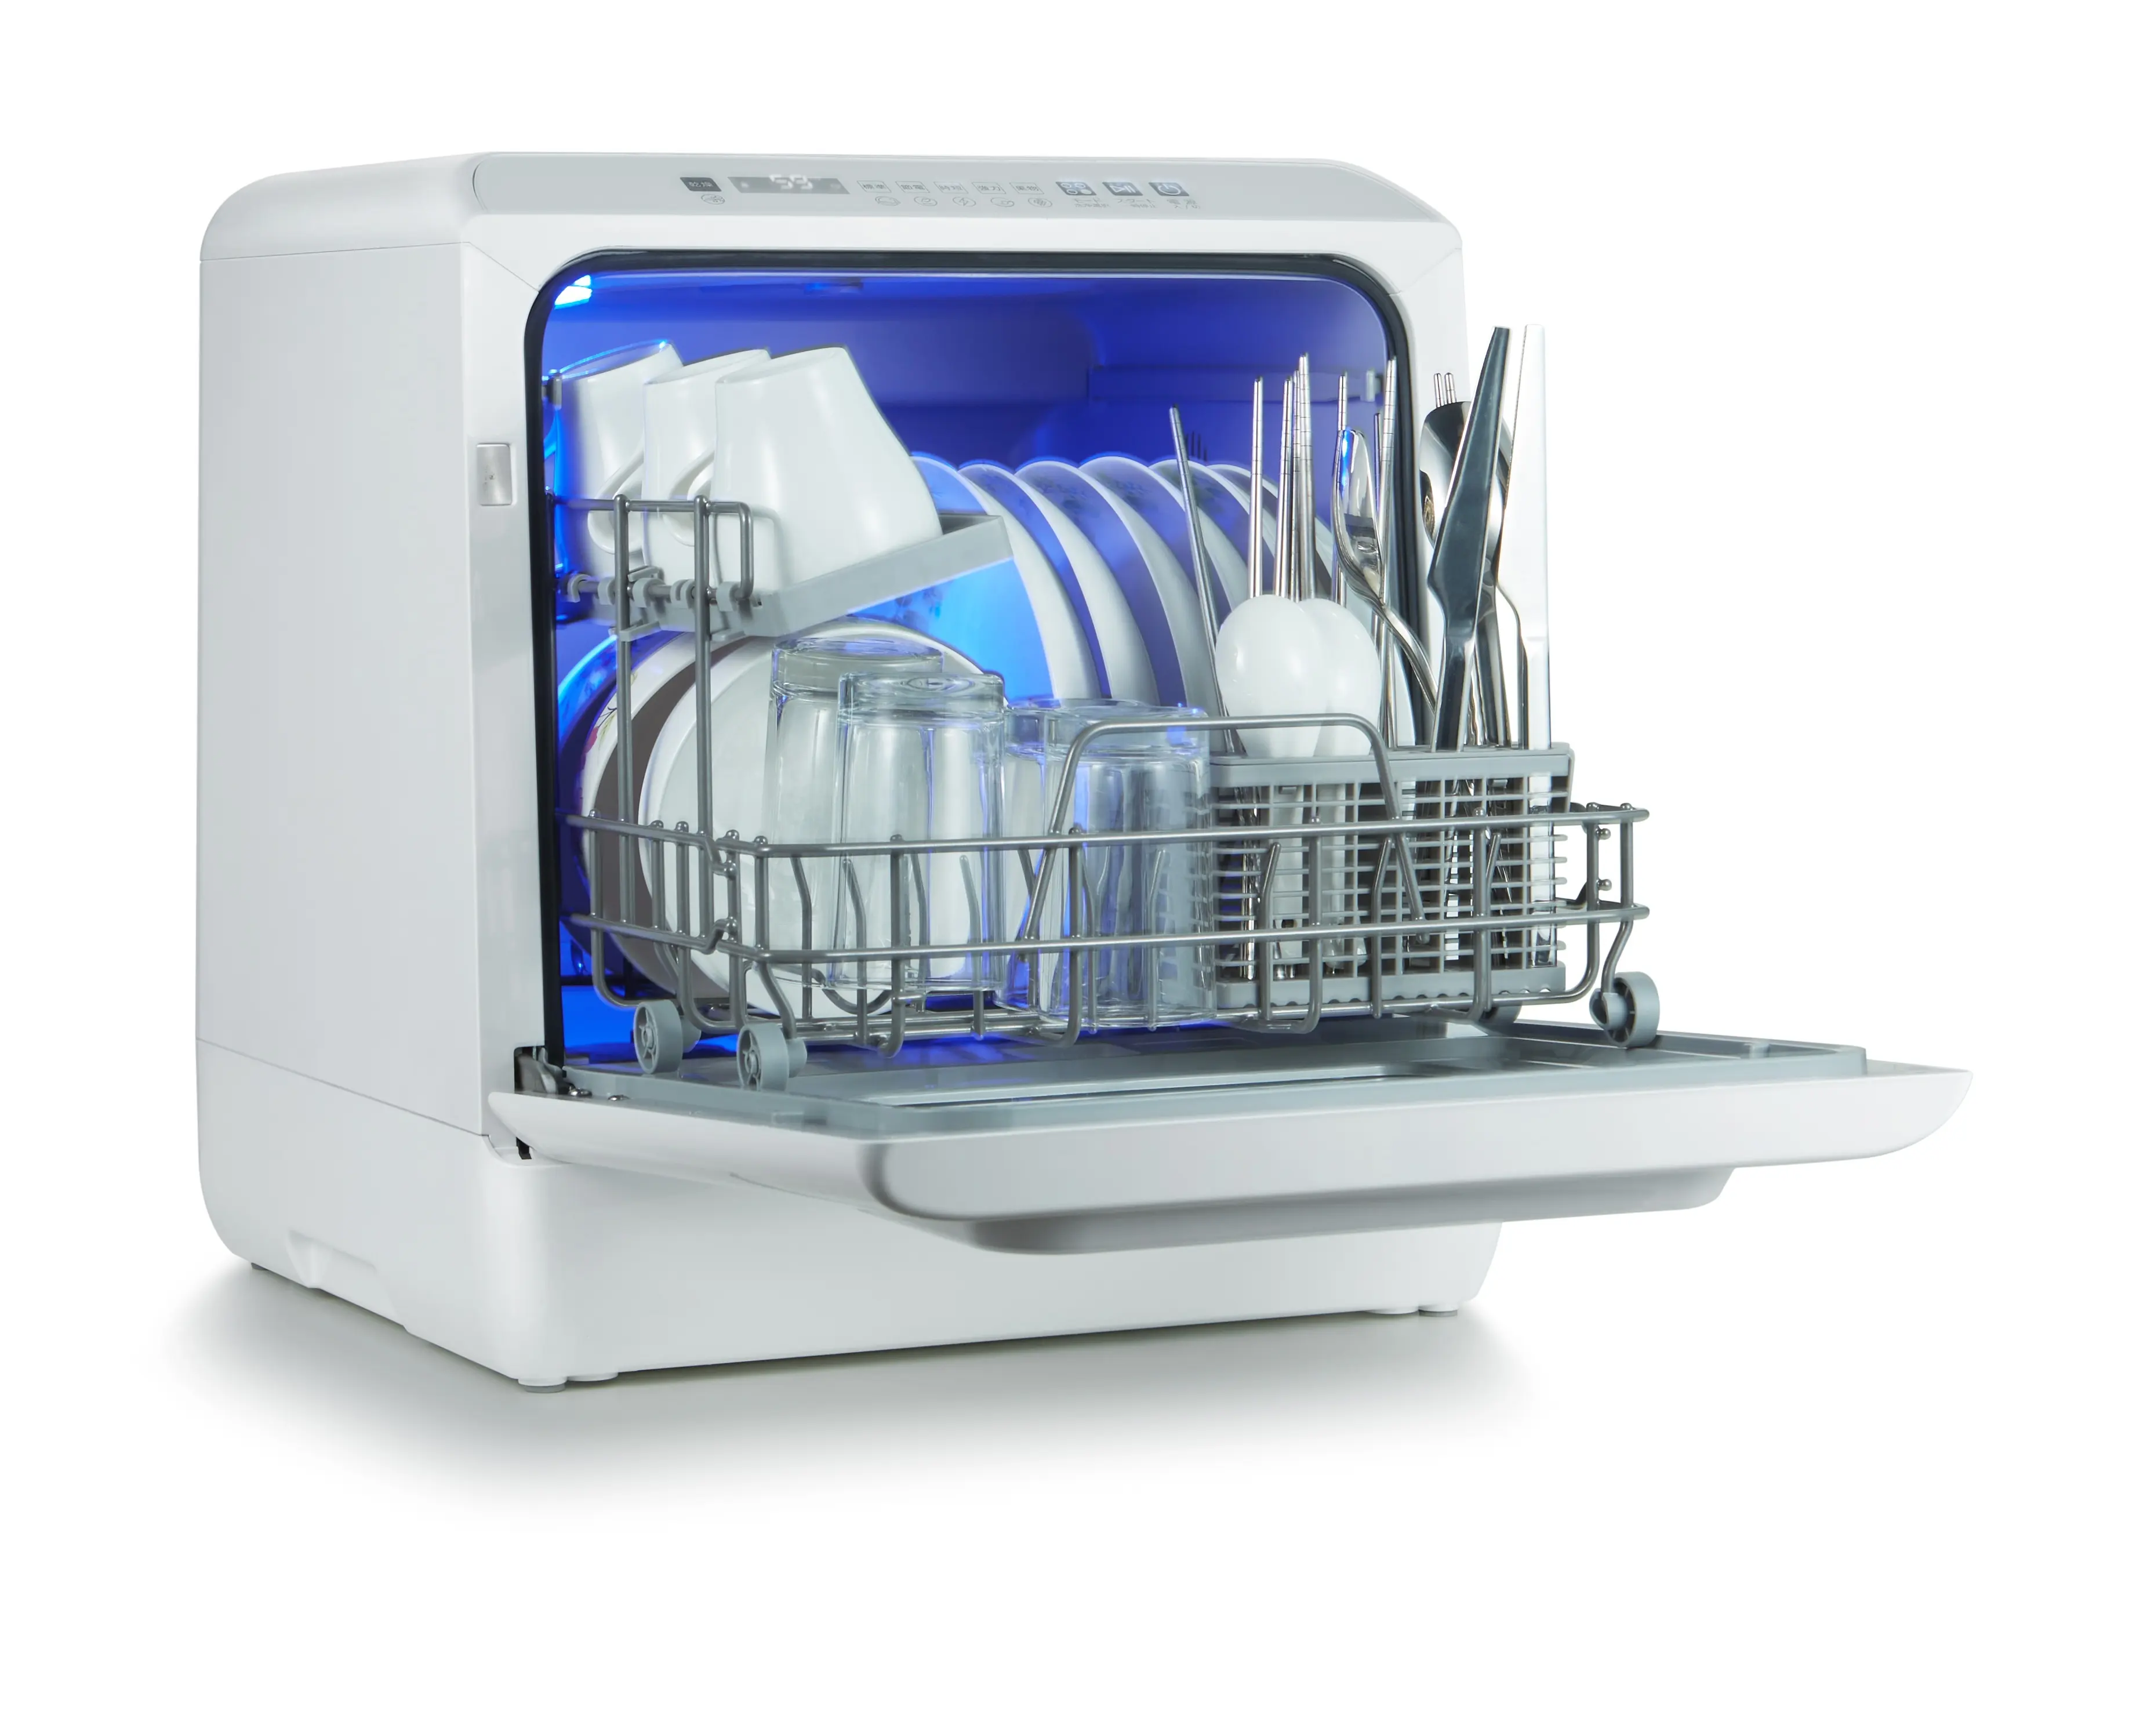 Countertop Dishwasher With 5 Washing Programs Built-In Basket Portable tabletop dishwasher dish washing machine